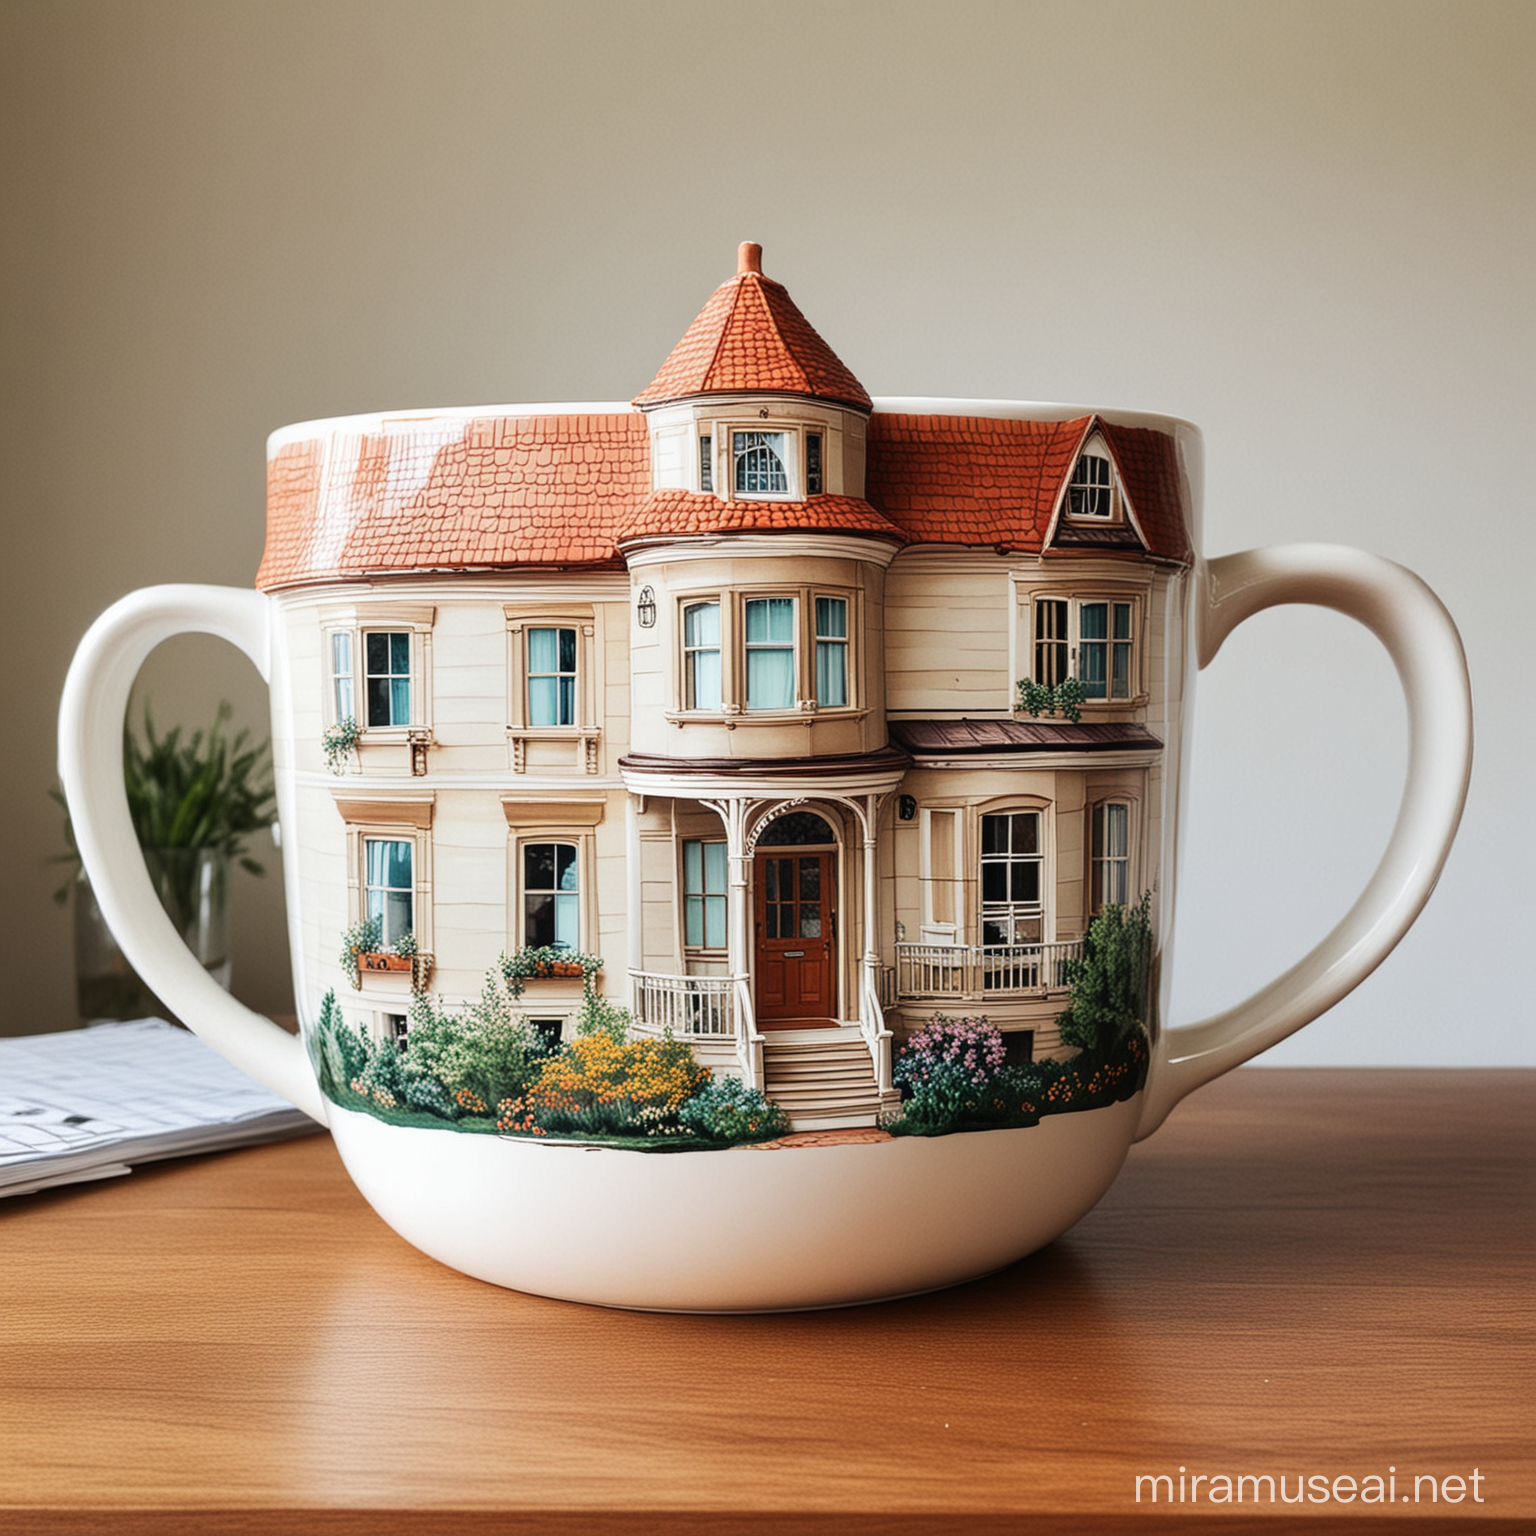 A giant coffee mug with a beautiful house inside.